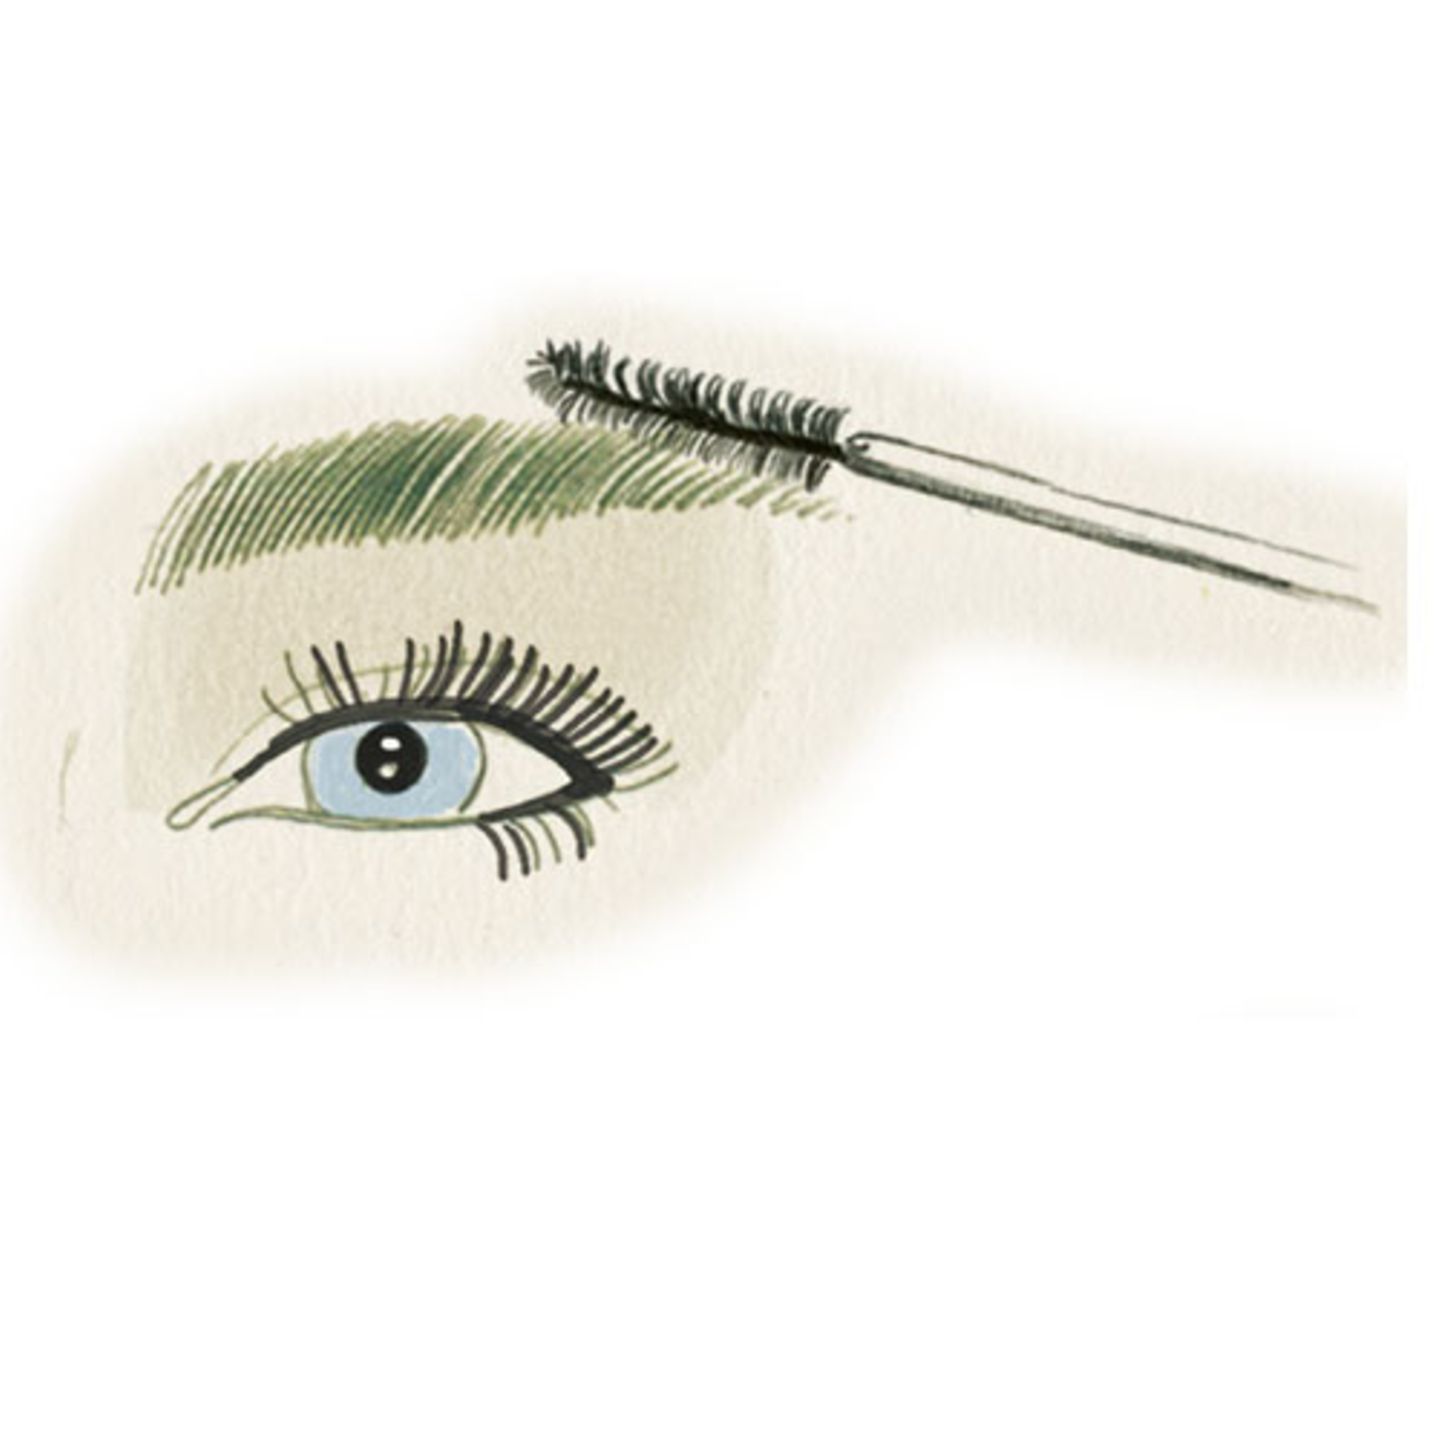 1. Widerspenstige Augenbrauen zähmen